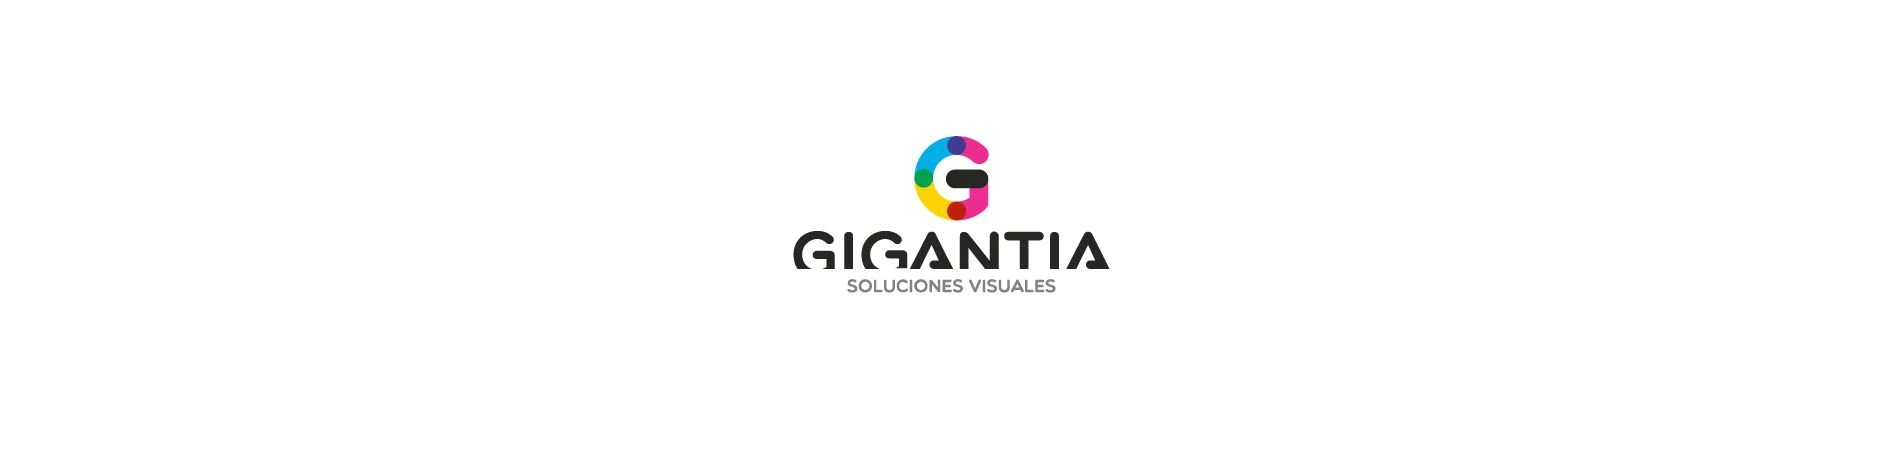 Gigantia, nuevo cliente de posicionamiento SEO y SEM